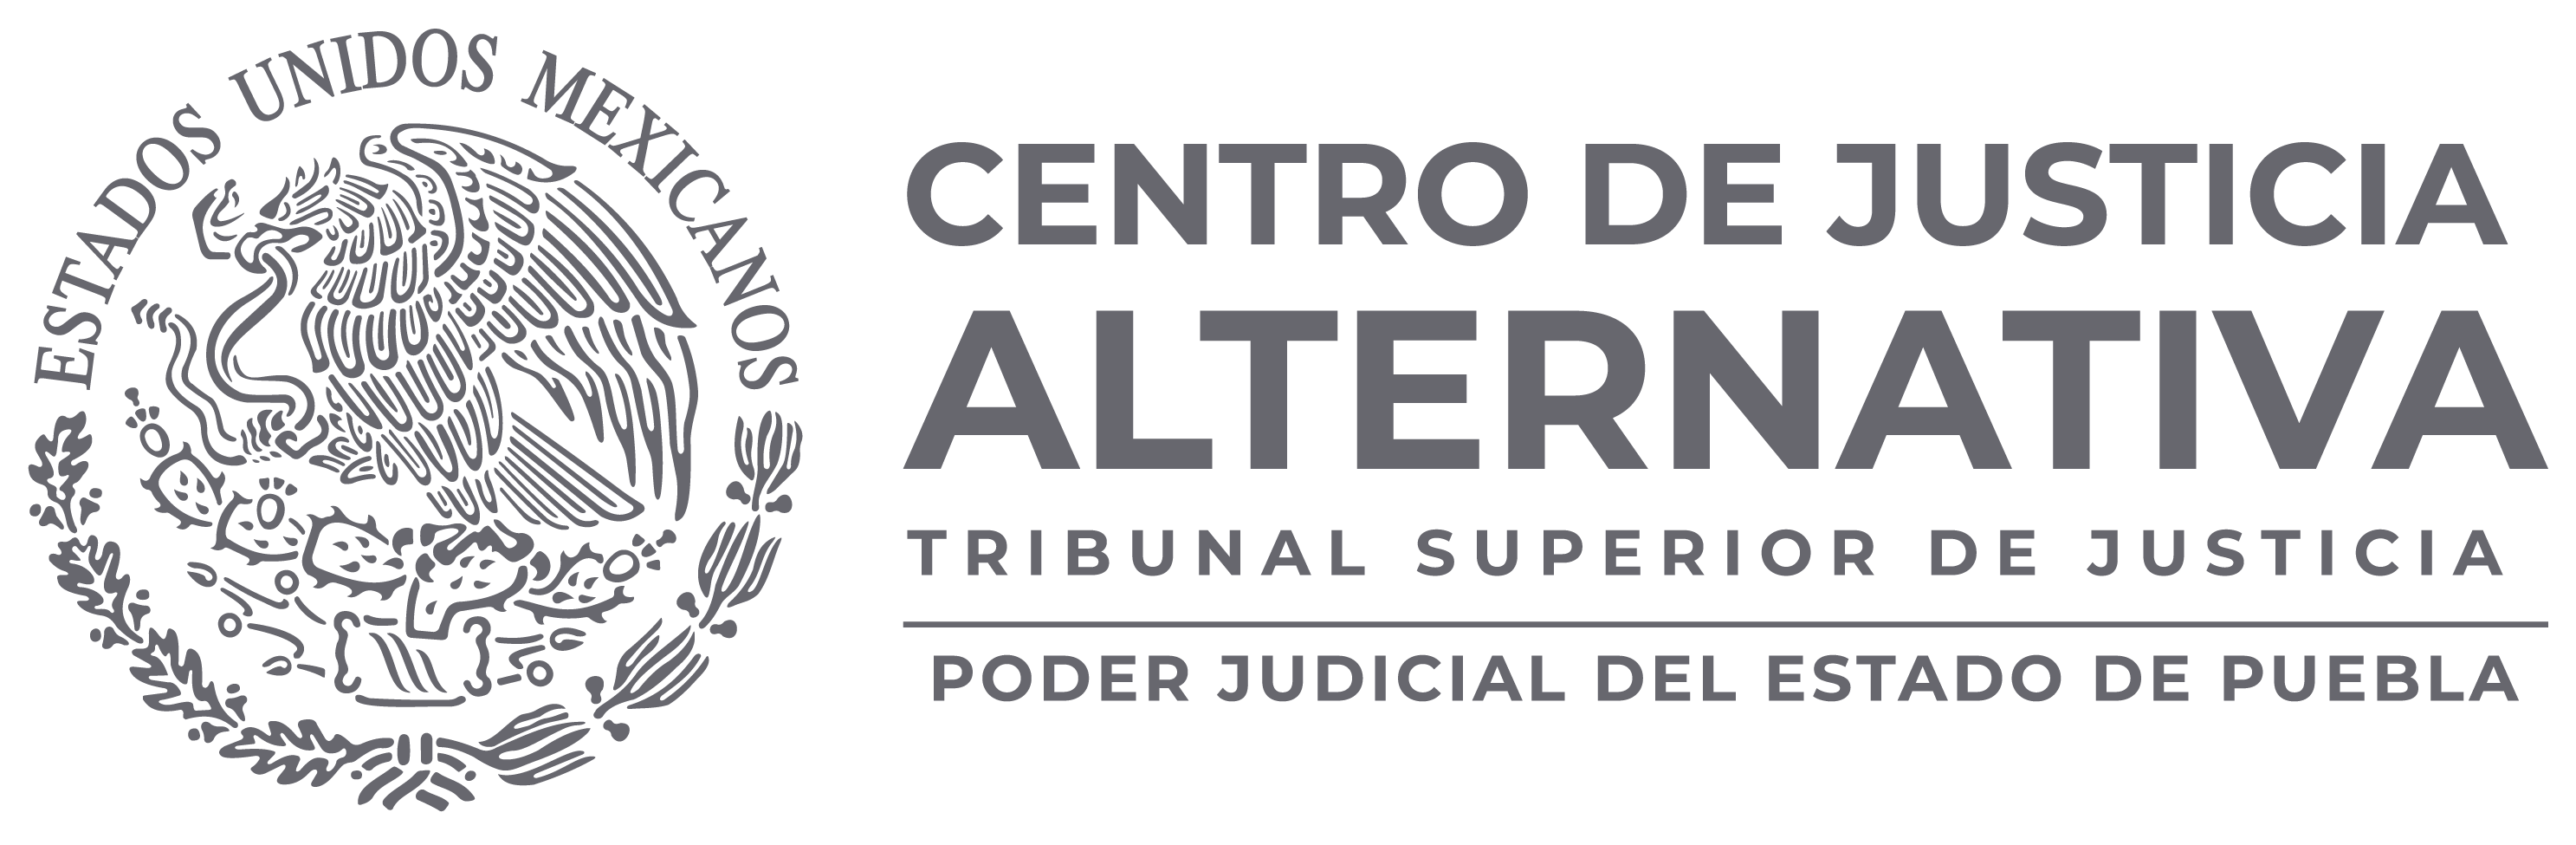 Poder Judicial del Estado de Puebla.